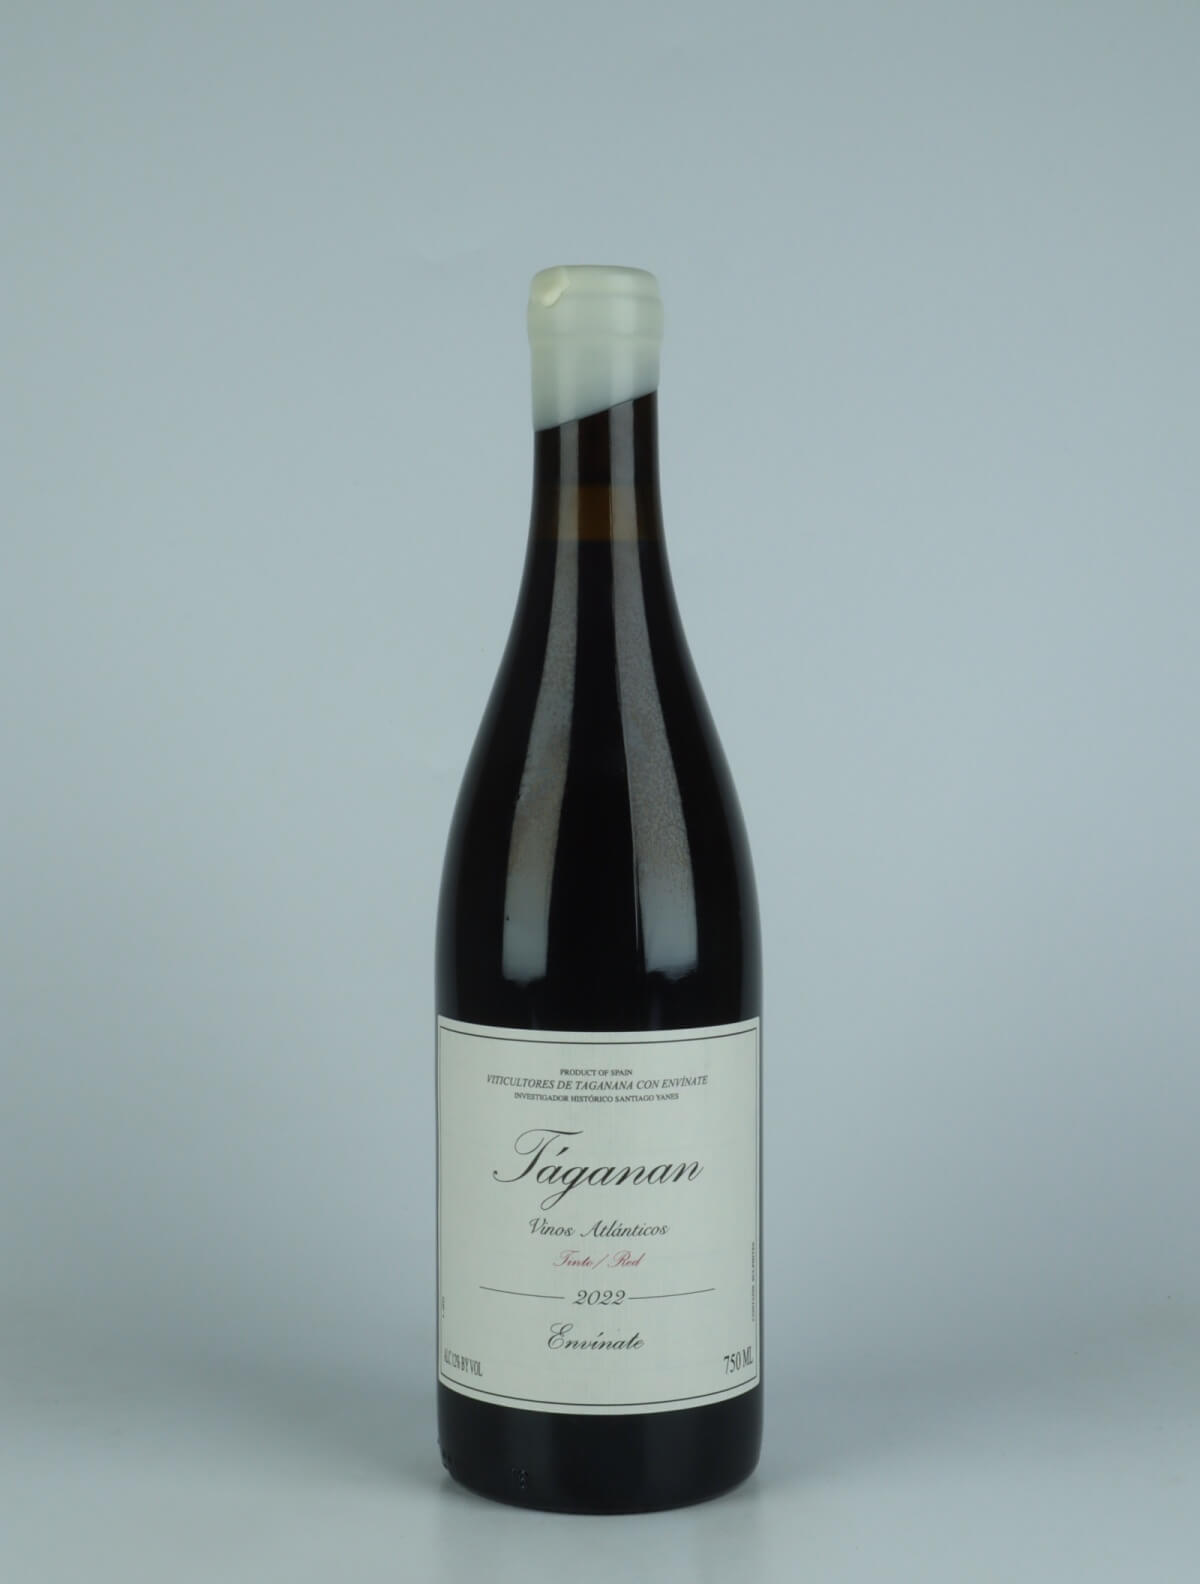 En flaske 2022 Taganan Tinto - Tenerife Rødvin fra Envínate, Tenerife i Spanien